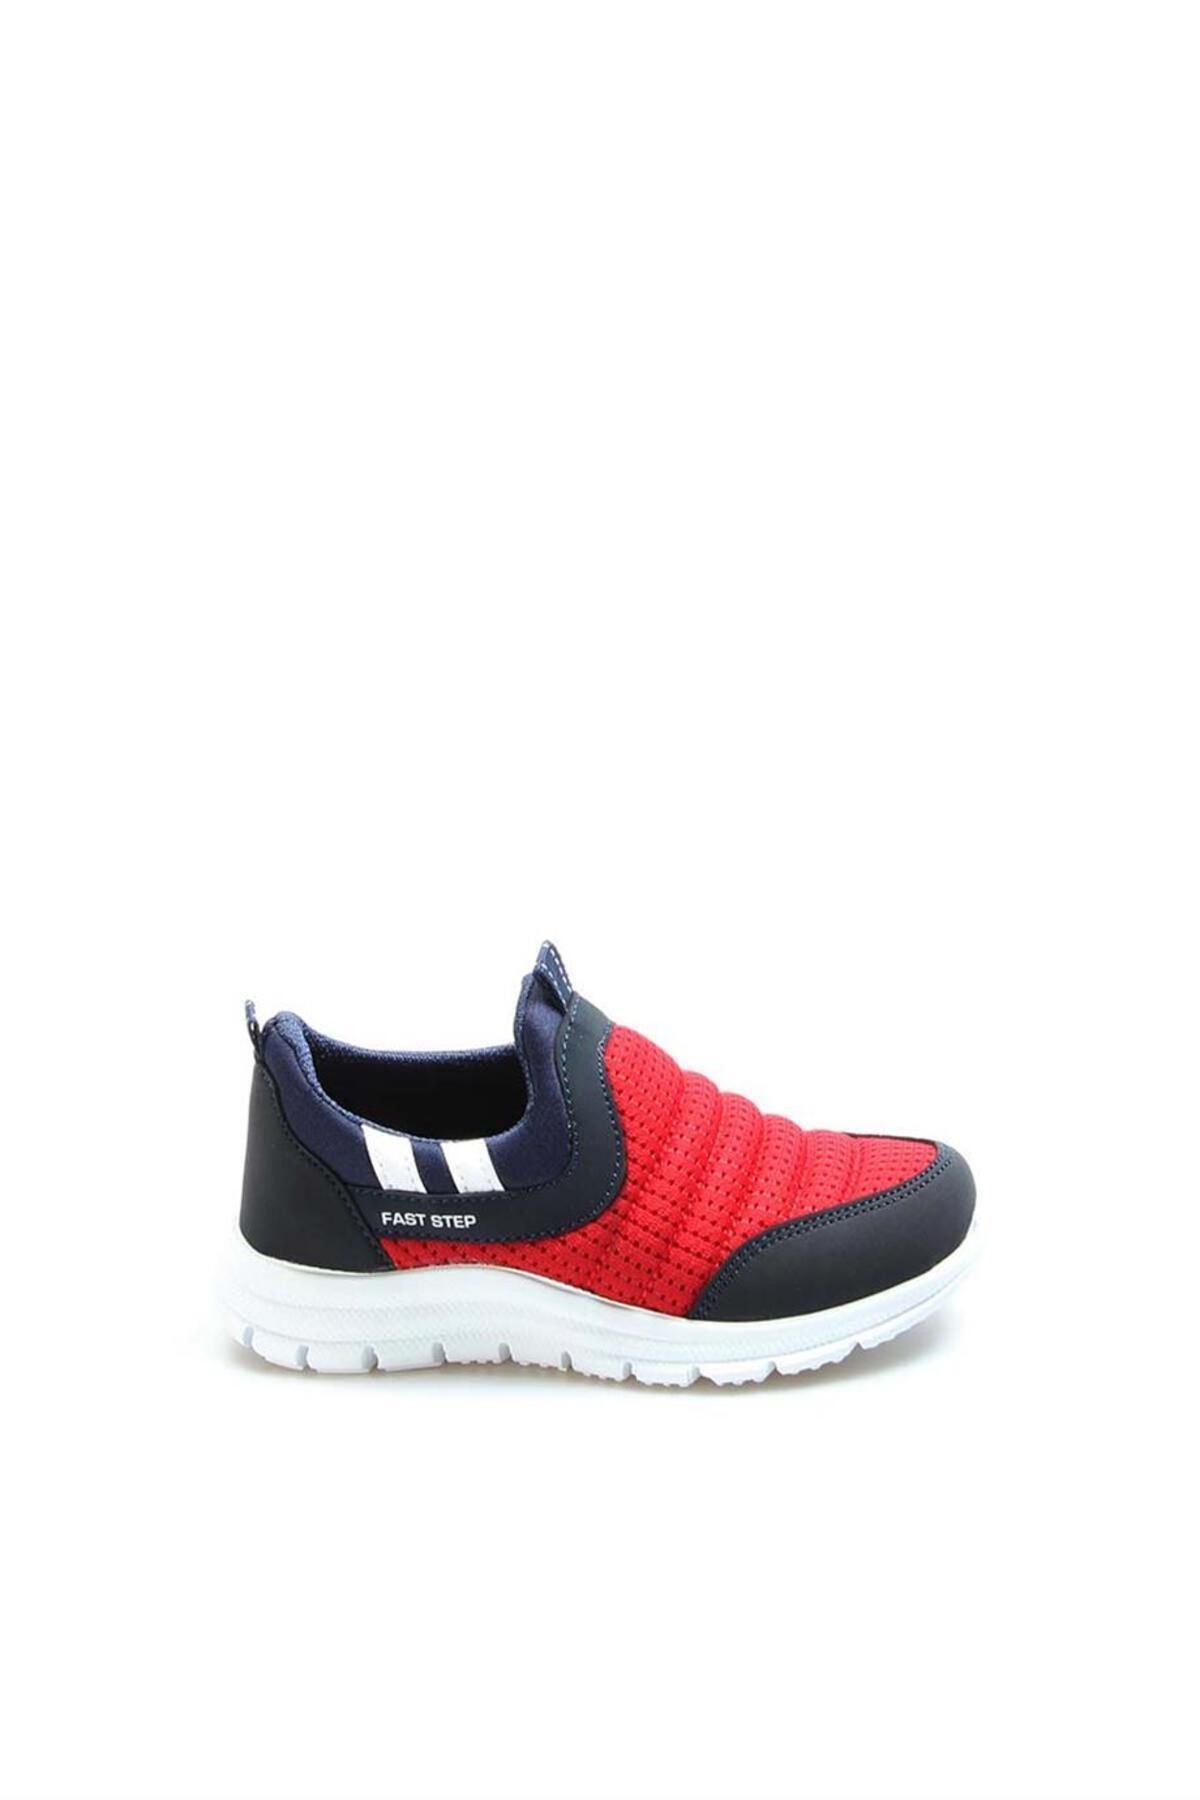 Fast Step Kırmızı Lacivert Unisex Çocuk Sneaker Ayakkabı 868pa1006